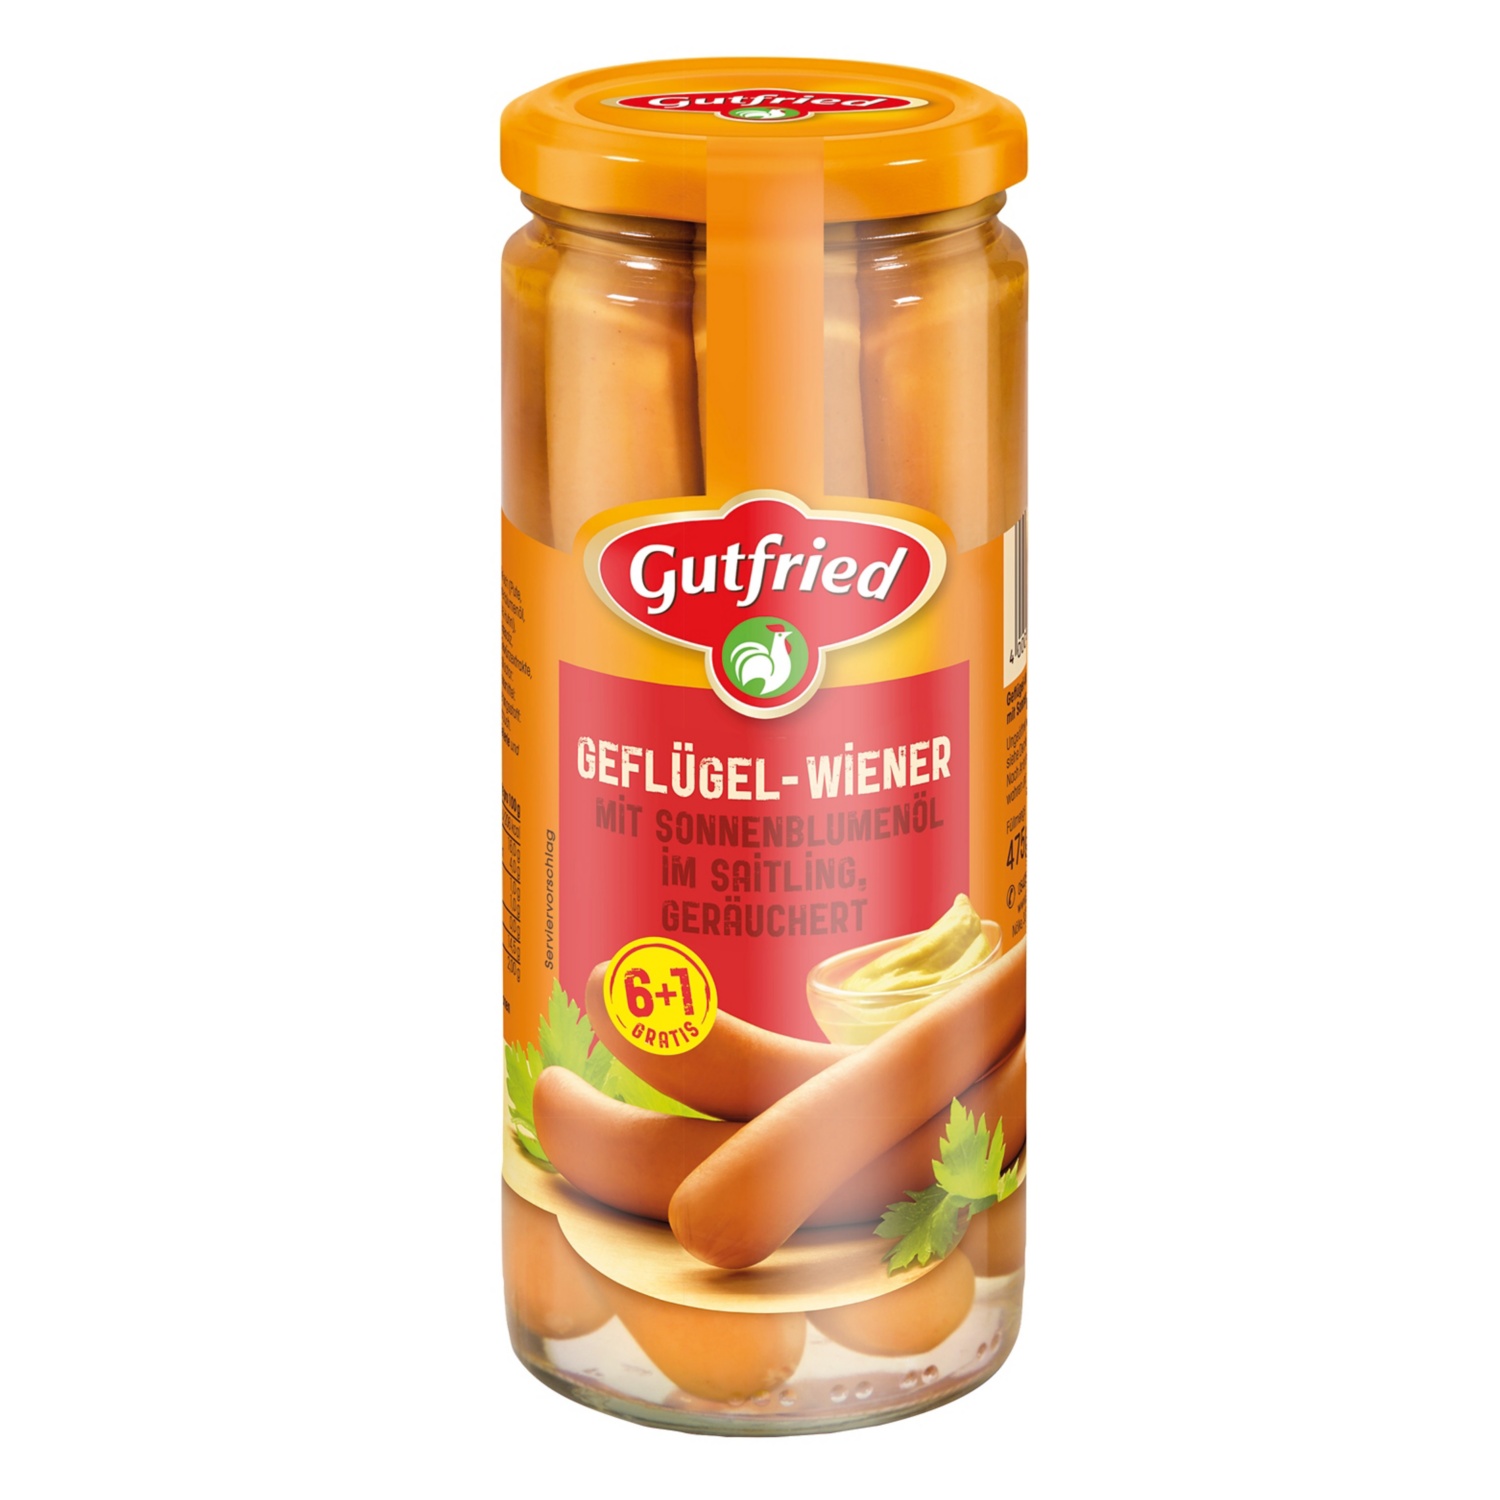 Gutfried Geflügel-Wiener 6 + 1 gratis 550 g